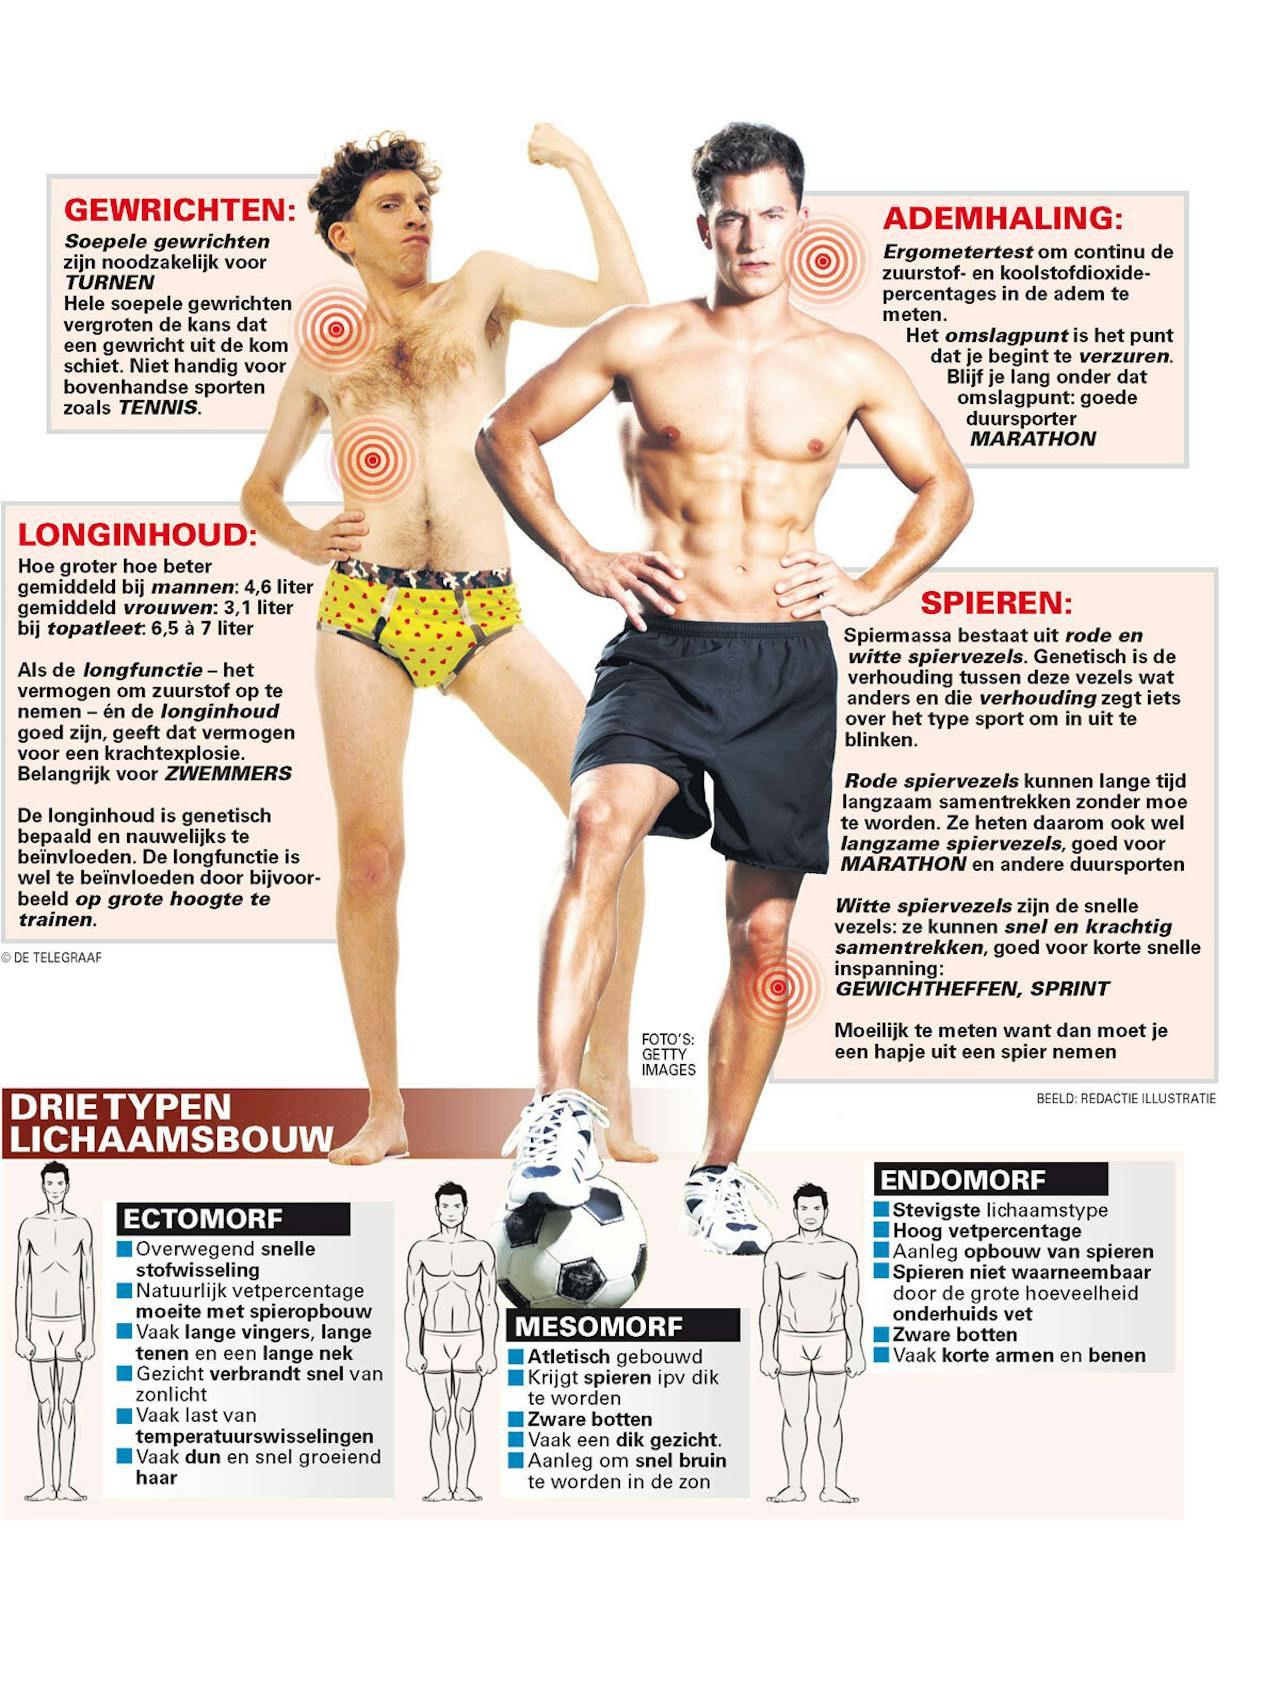 Een poster over drie typen lichaamsbouw. Er staan twee personen op de poster.